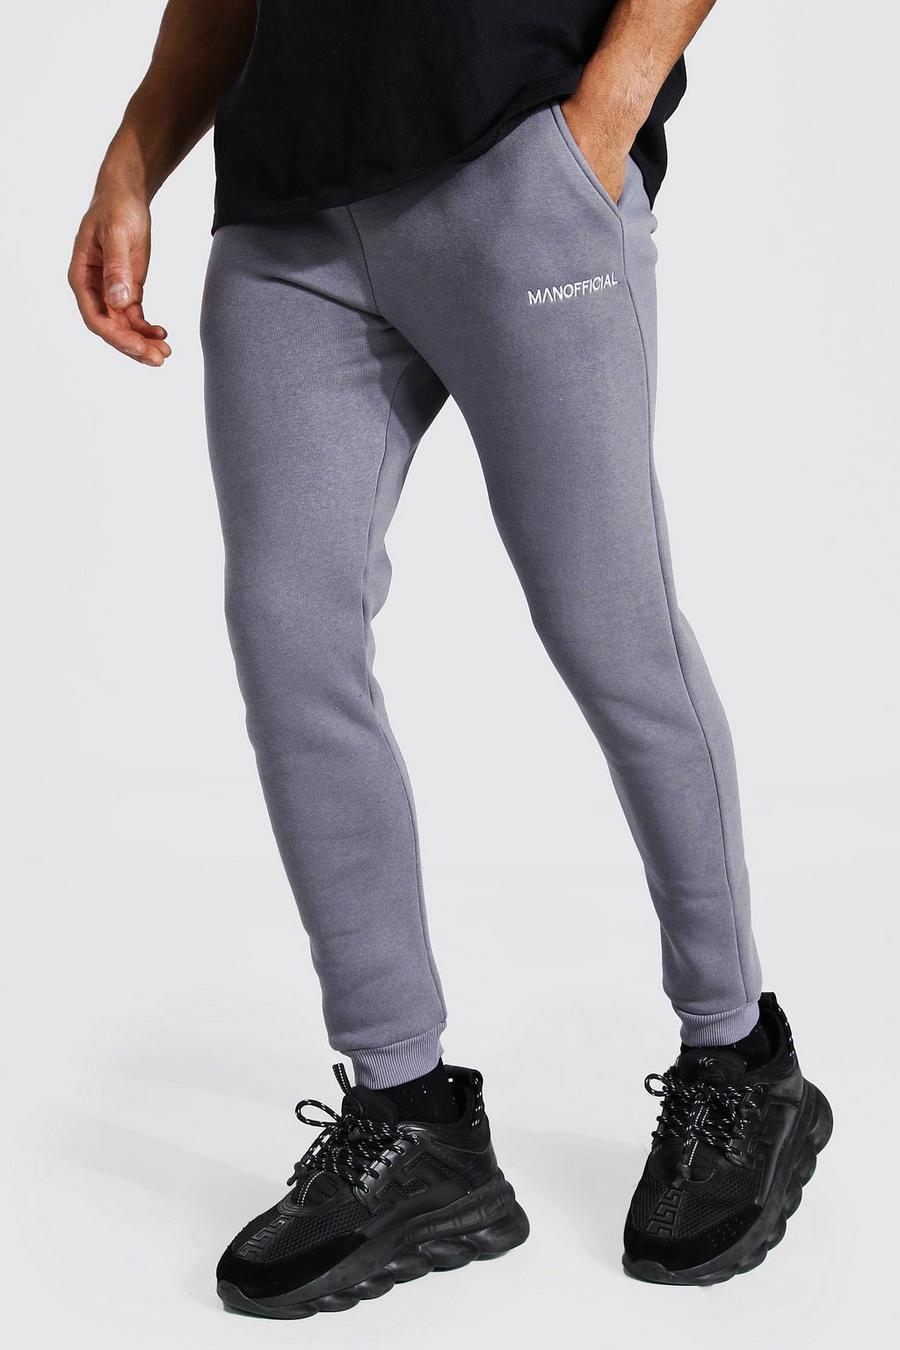 Pantaloni tuta skinny con doppio elastico in vita Official Man, Canna di fucile image number 1